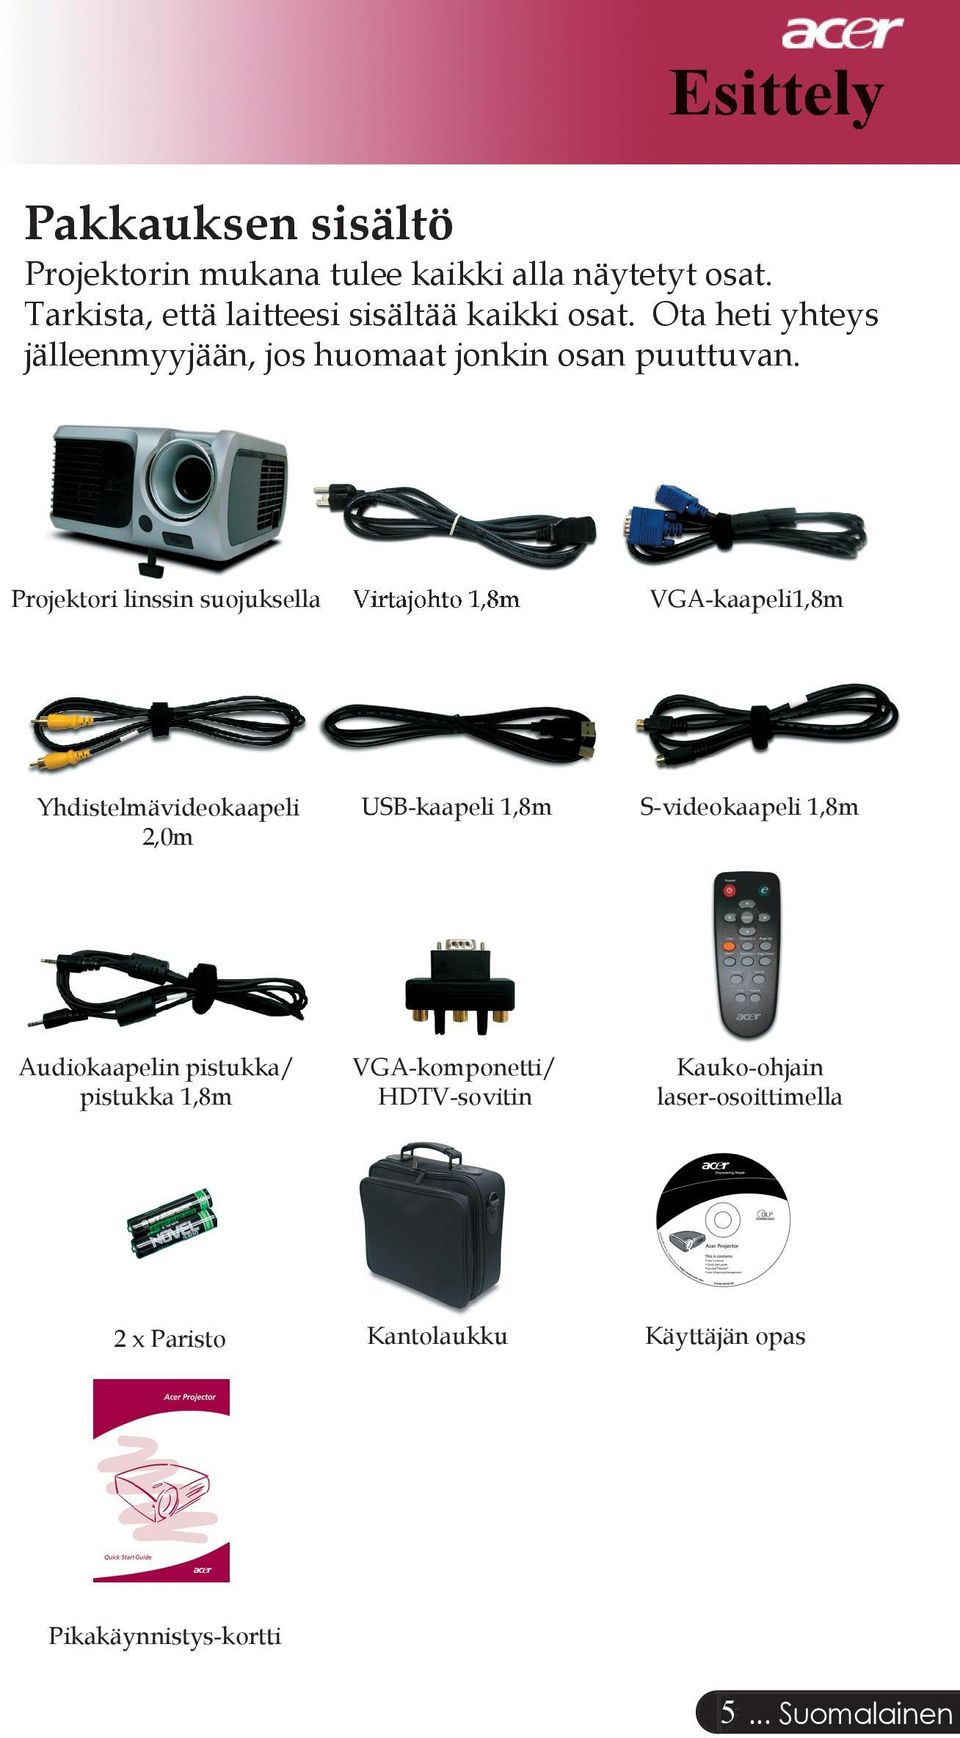 Projektori linssin suojuksella Virtajohto 1,8m VGA-kaapeli1,8m Yhdistelmävideokaapeli 2,0m USB-kaapeli 1,8m S-videokaapeli